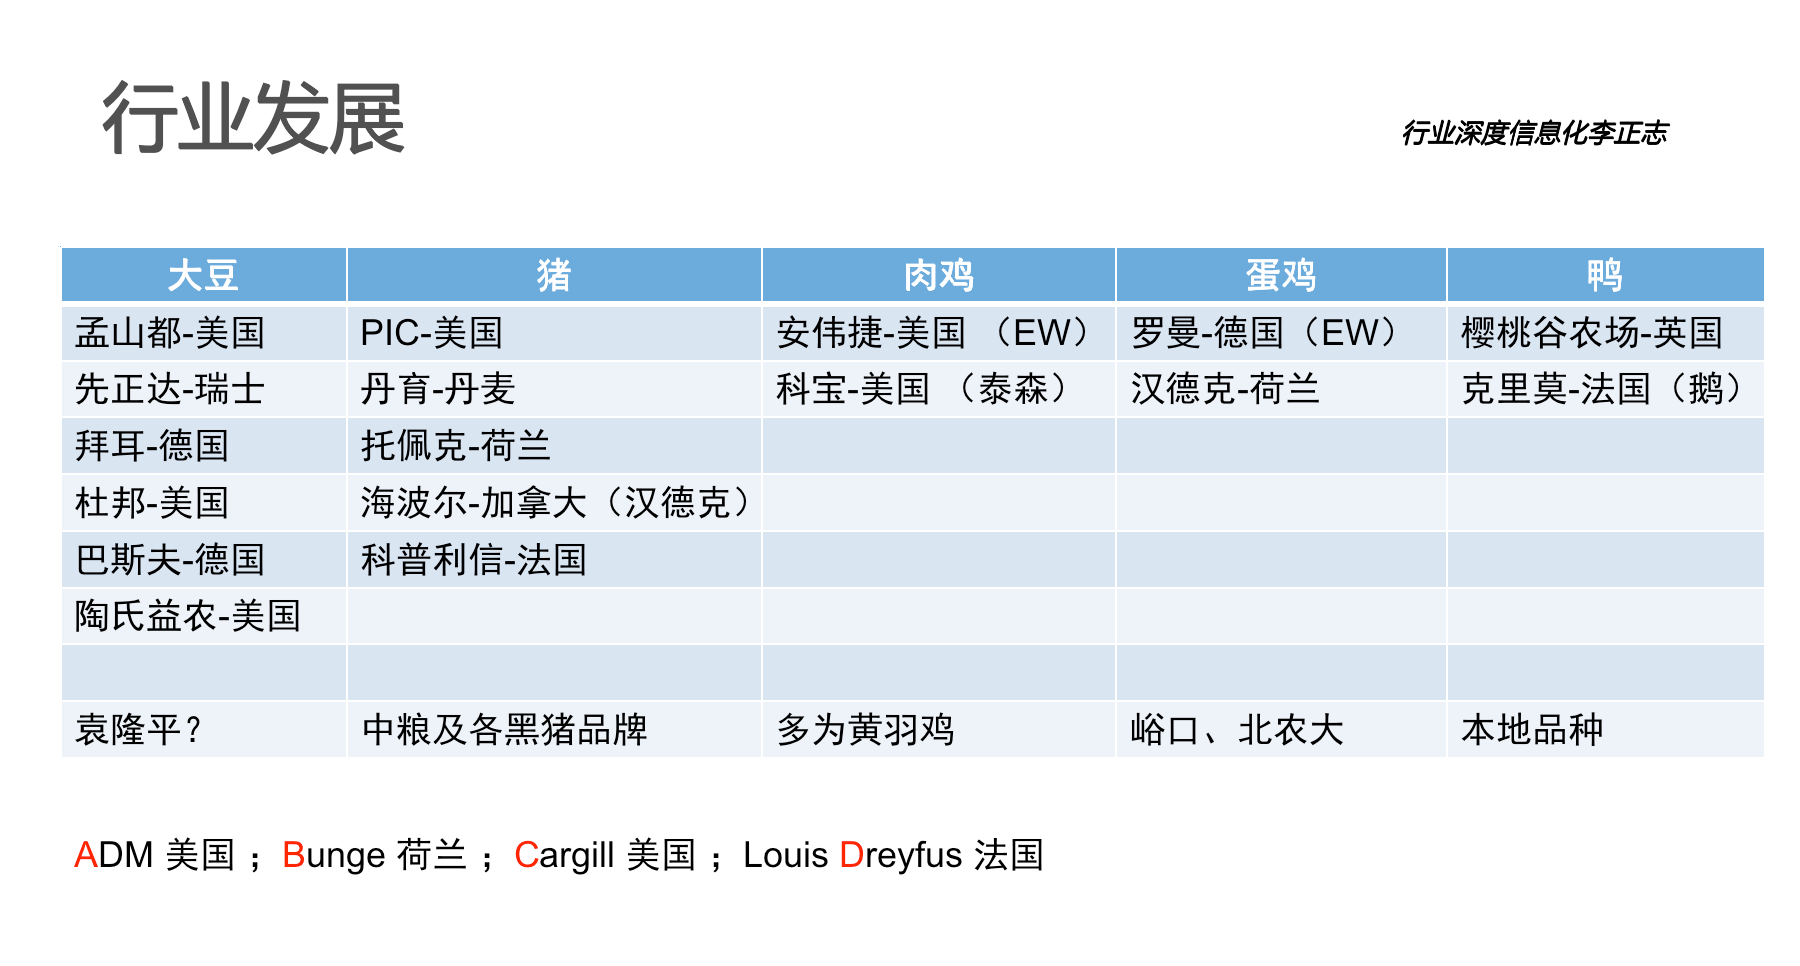 宝运莱官网华夏农牧行业讯息化结构-天主视角数字化运营(图3)